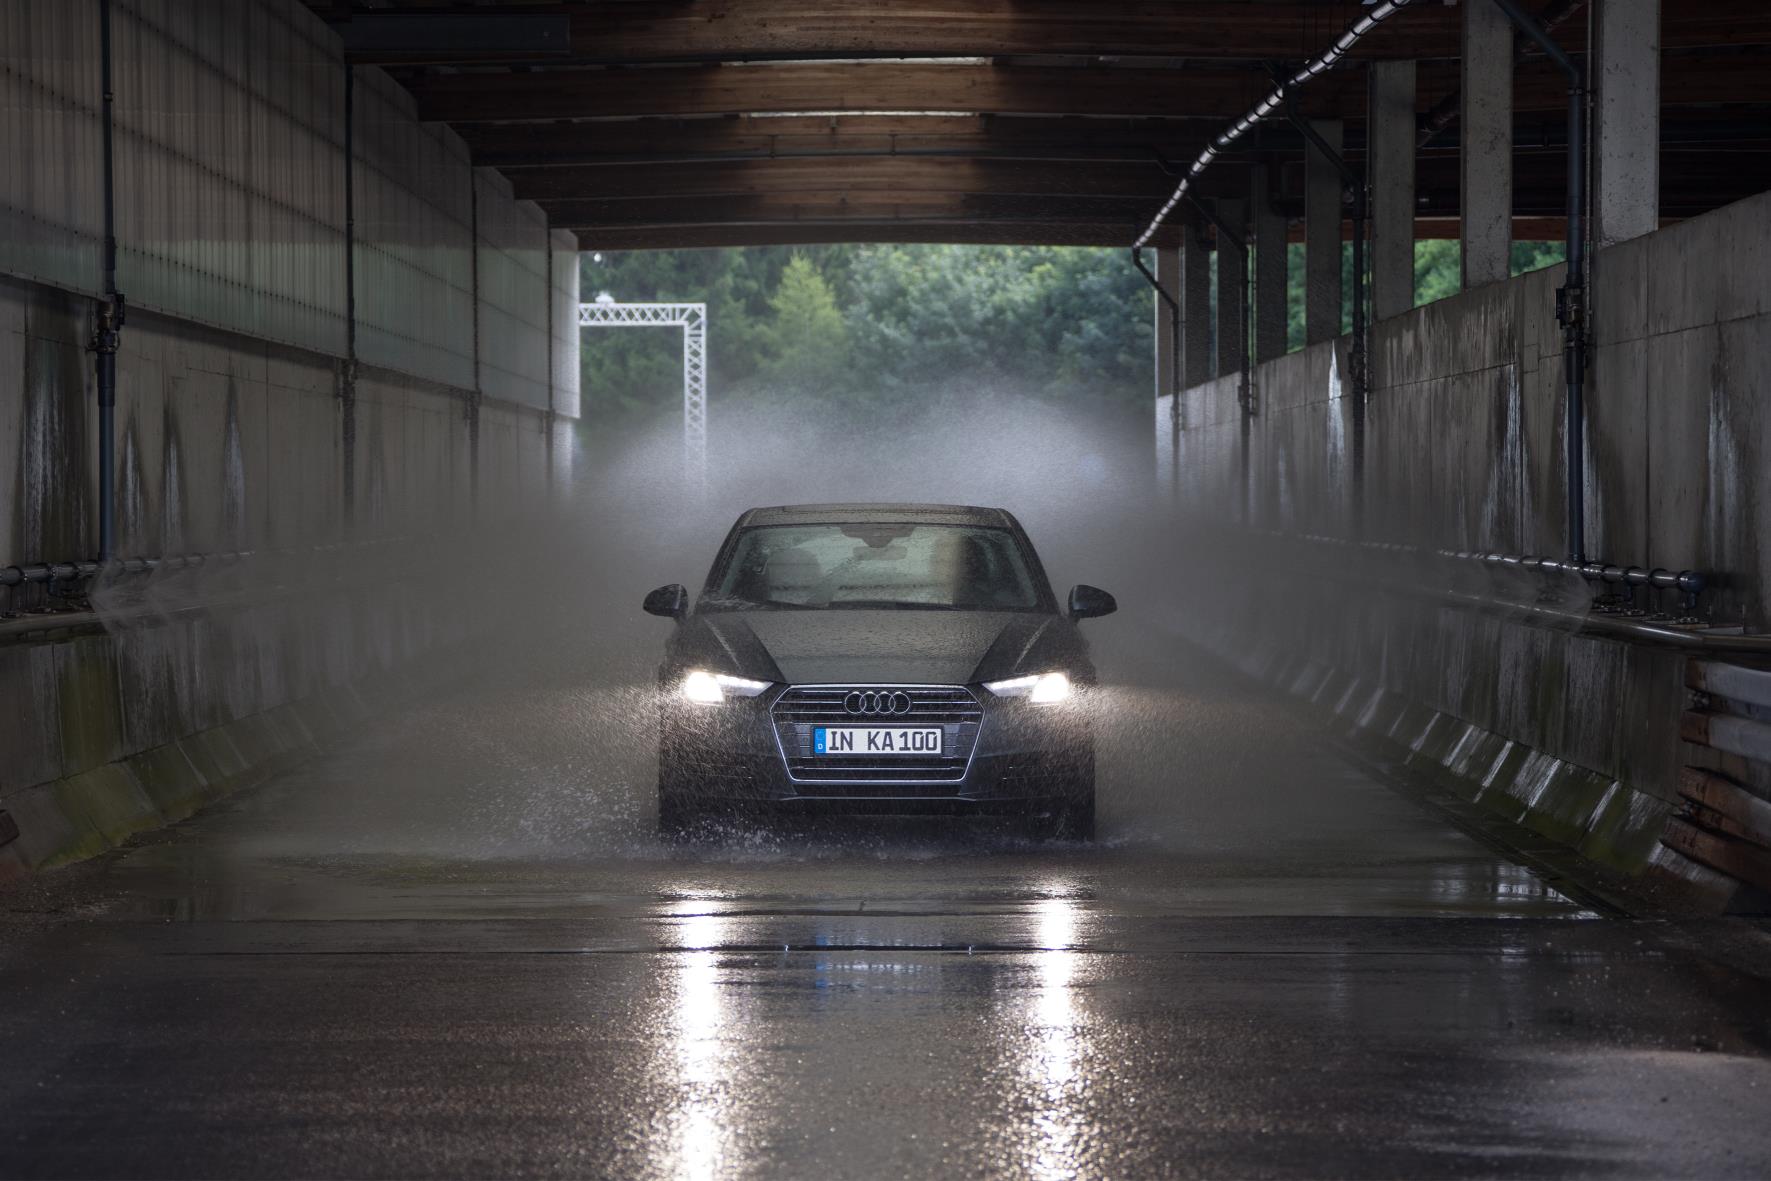 Antes de que un nuevo modelo de Audi reciba la aprobación para su producción en serie, se realizan pruebas de validación con unidades de pre-serie